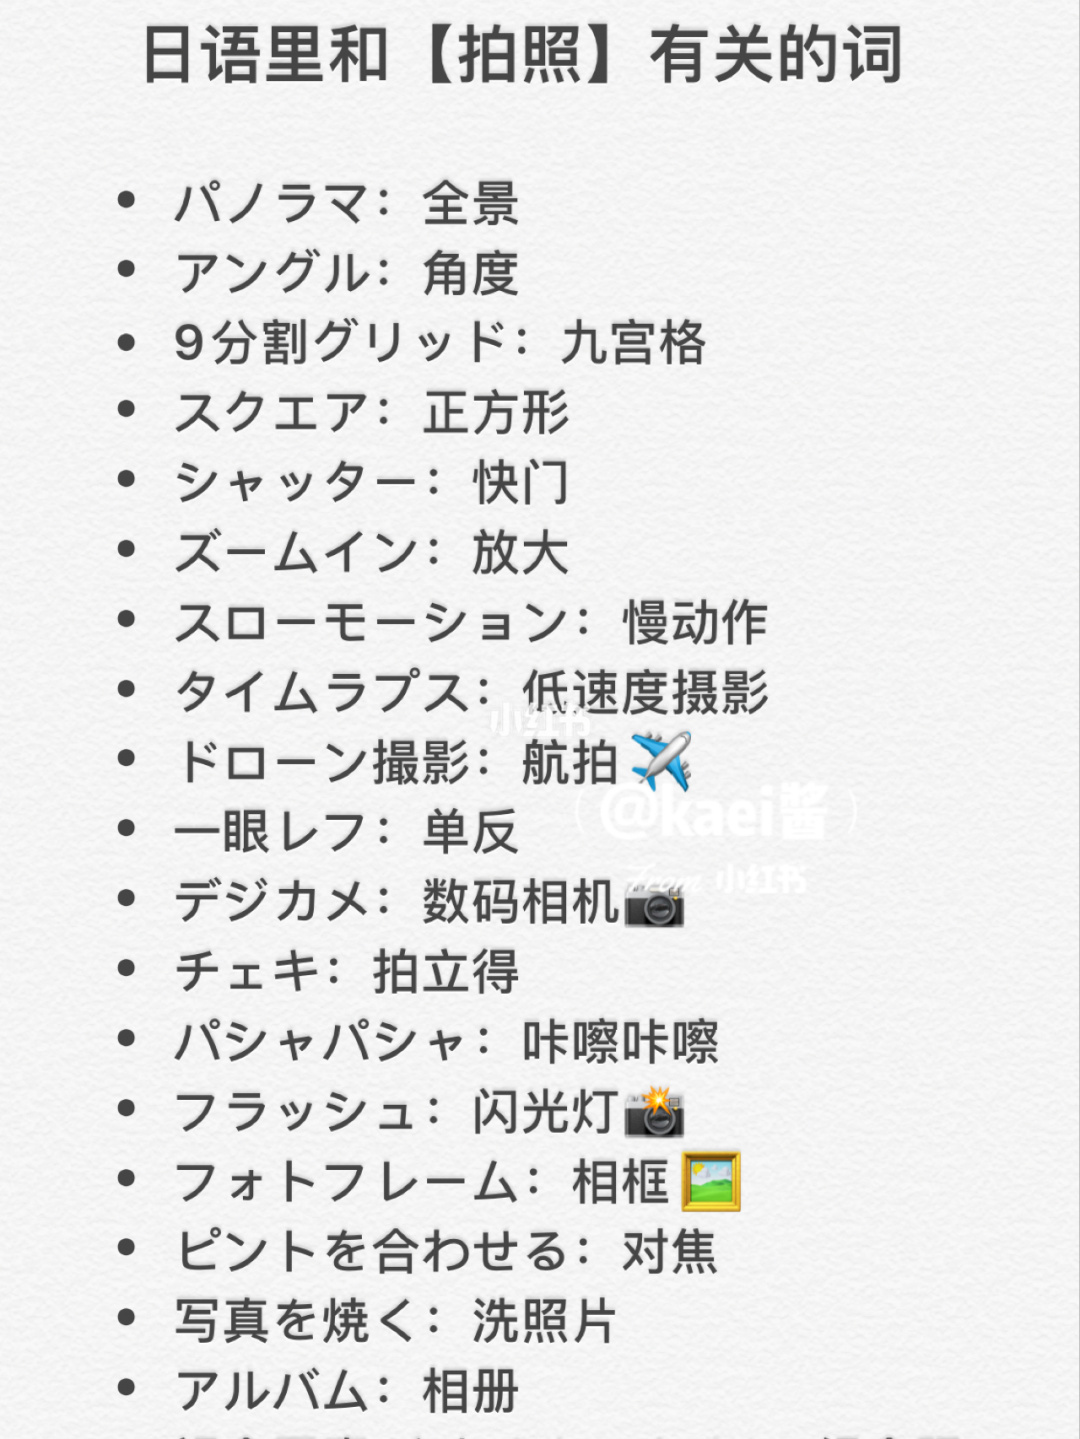 日语学习，旅游出行必备翻译利器！赶紧试试吧！